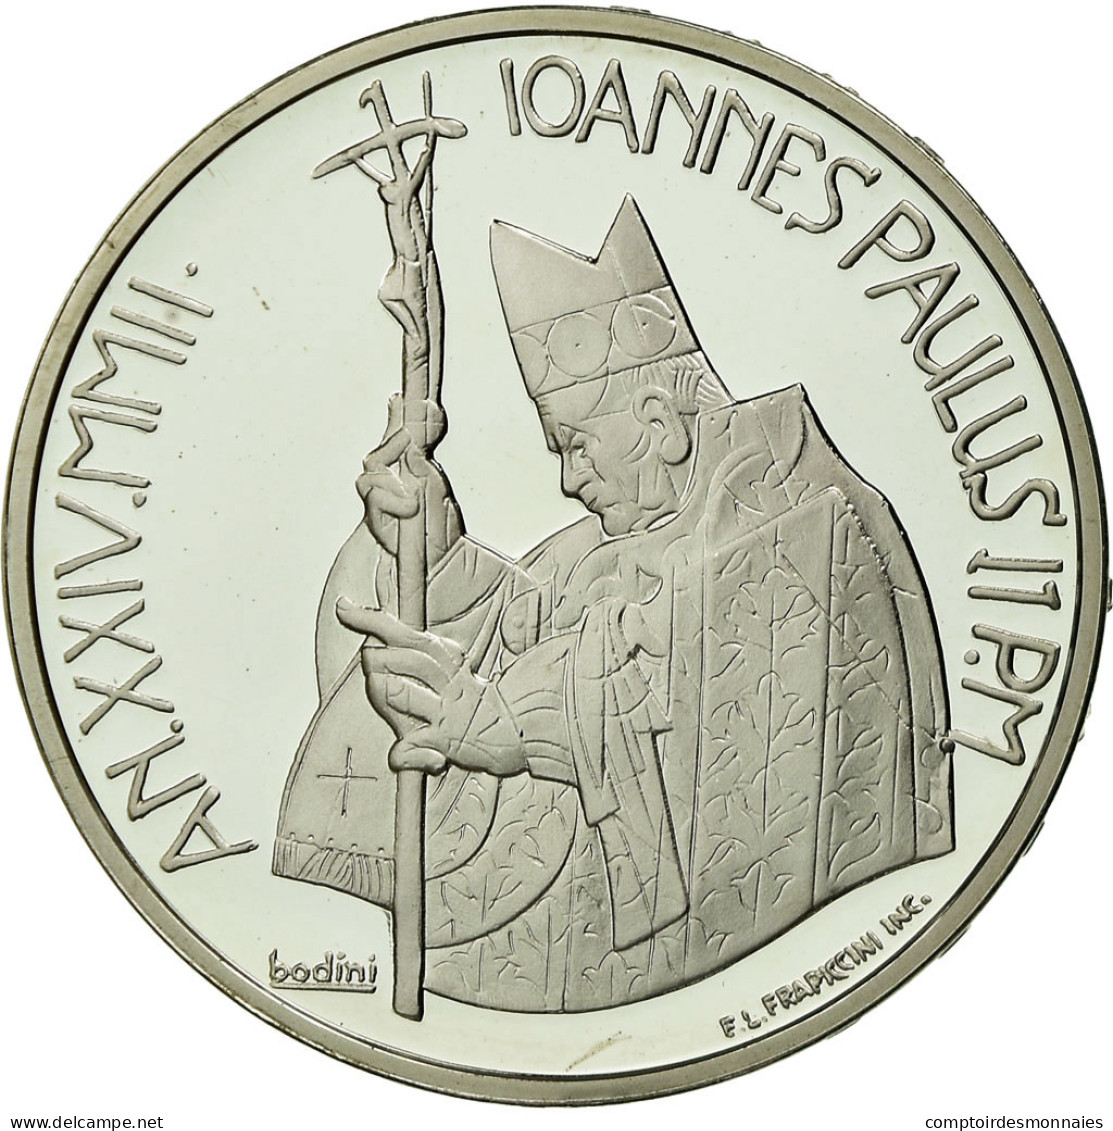 Vatican, 10 Euro, 2002, Proof, FDC, Argent - Vaticaanstad